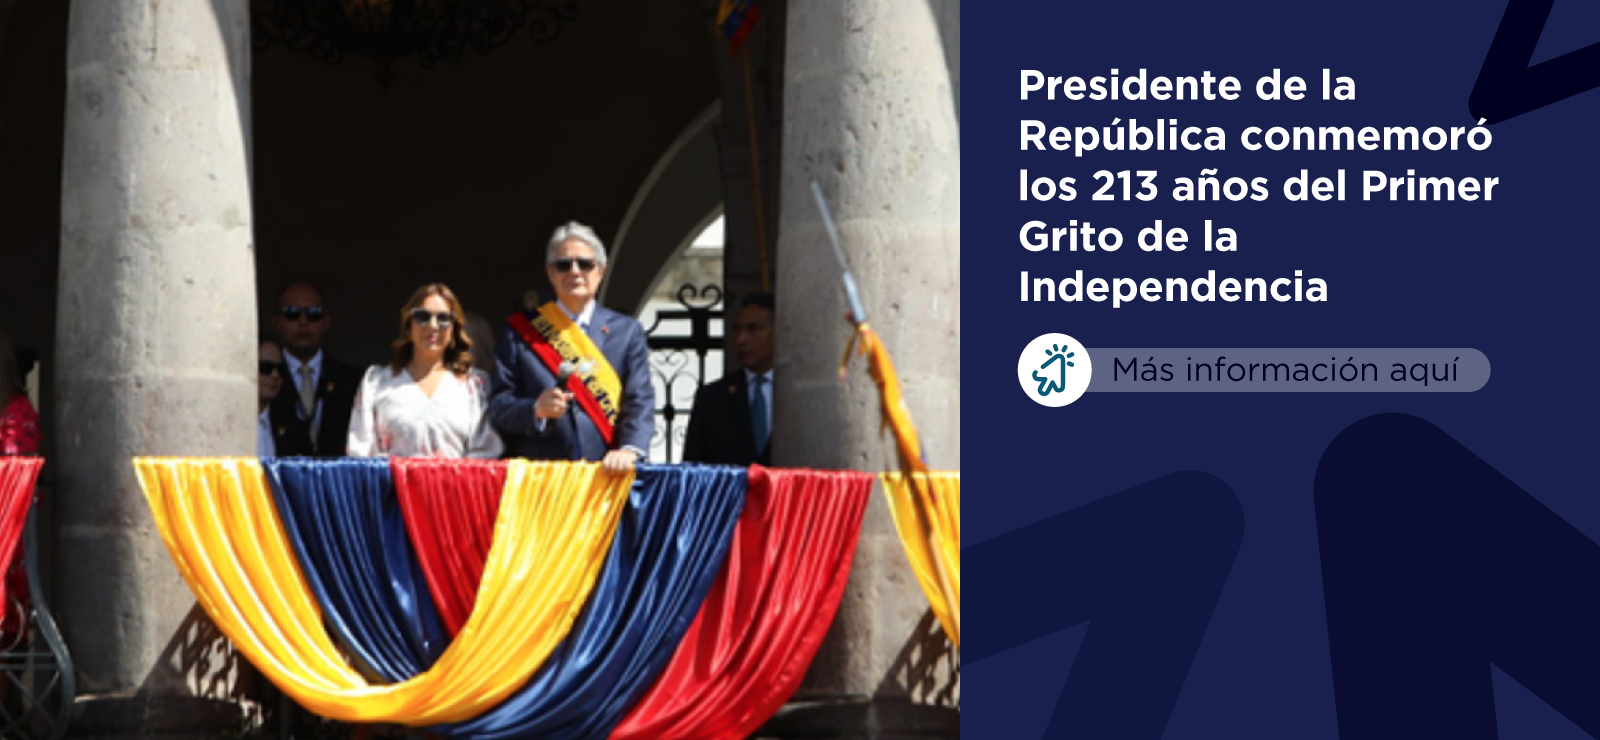 En conmemoración del Primer Grito de la Independencia, el presidente Guillermo Lasso y autoridades de Estado entregaron una ofrenda floral en el Monumento a la Independencia